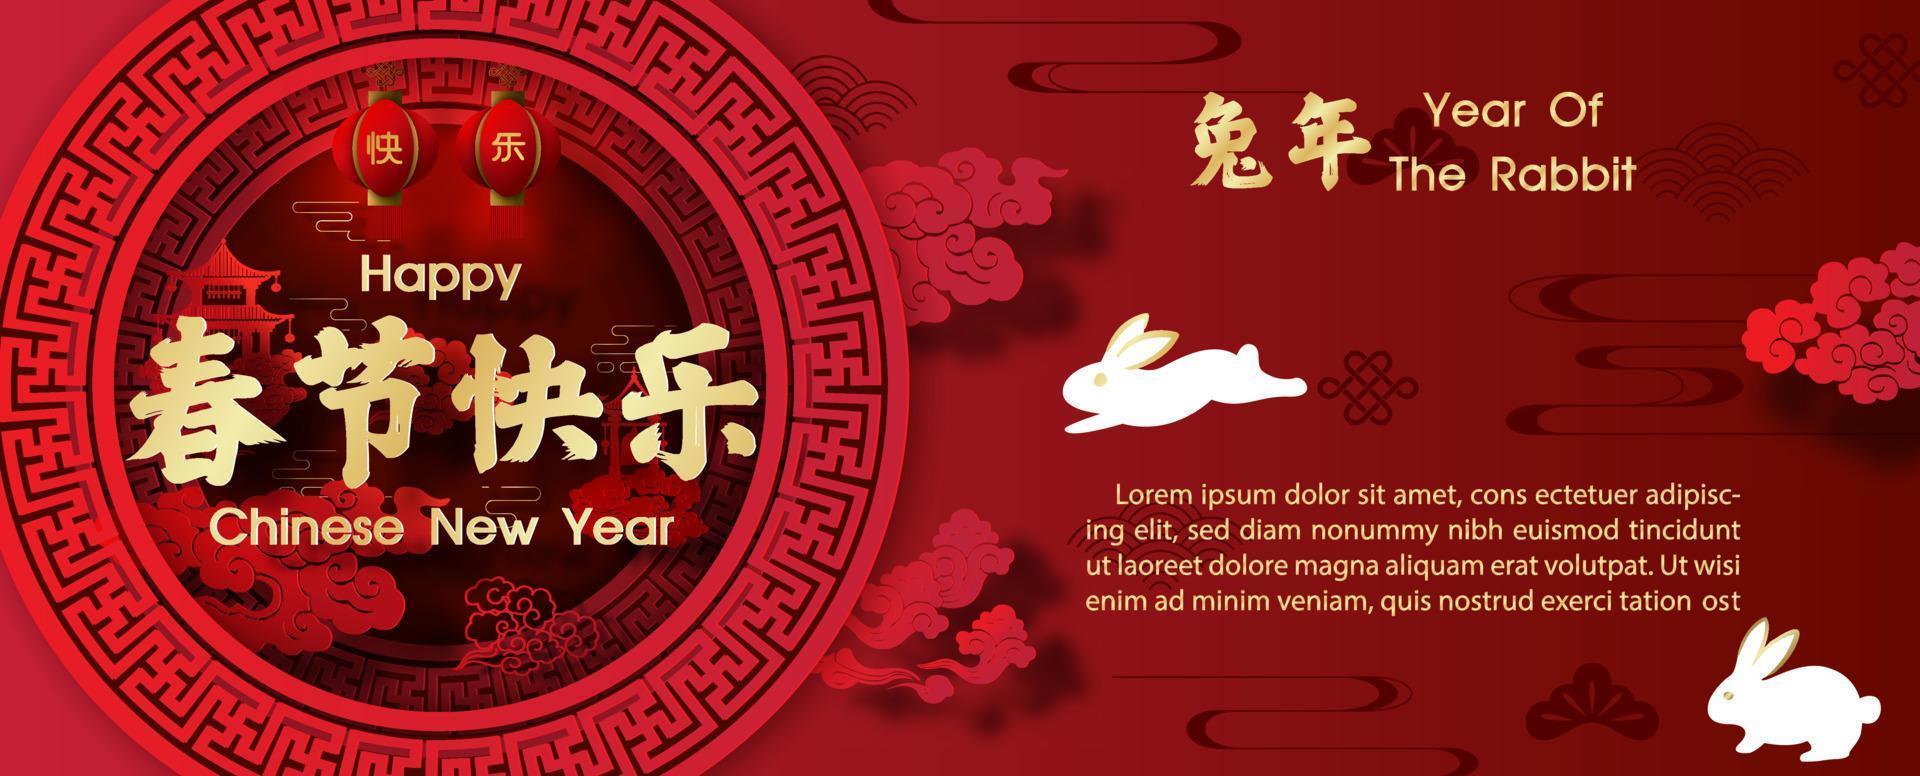 chinesische neujahrsgrußkarte das jahr des kaninchens im papierschnitt und im 3d-stil mit vektordesign. chinesische buchstaben bedeuten frohes chinesisches neues jahr und jahr des kaninchens auf englisch vektor